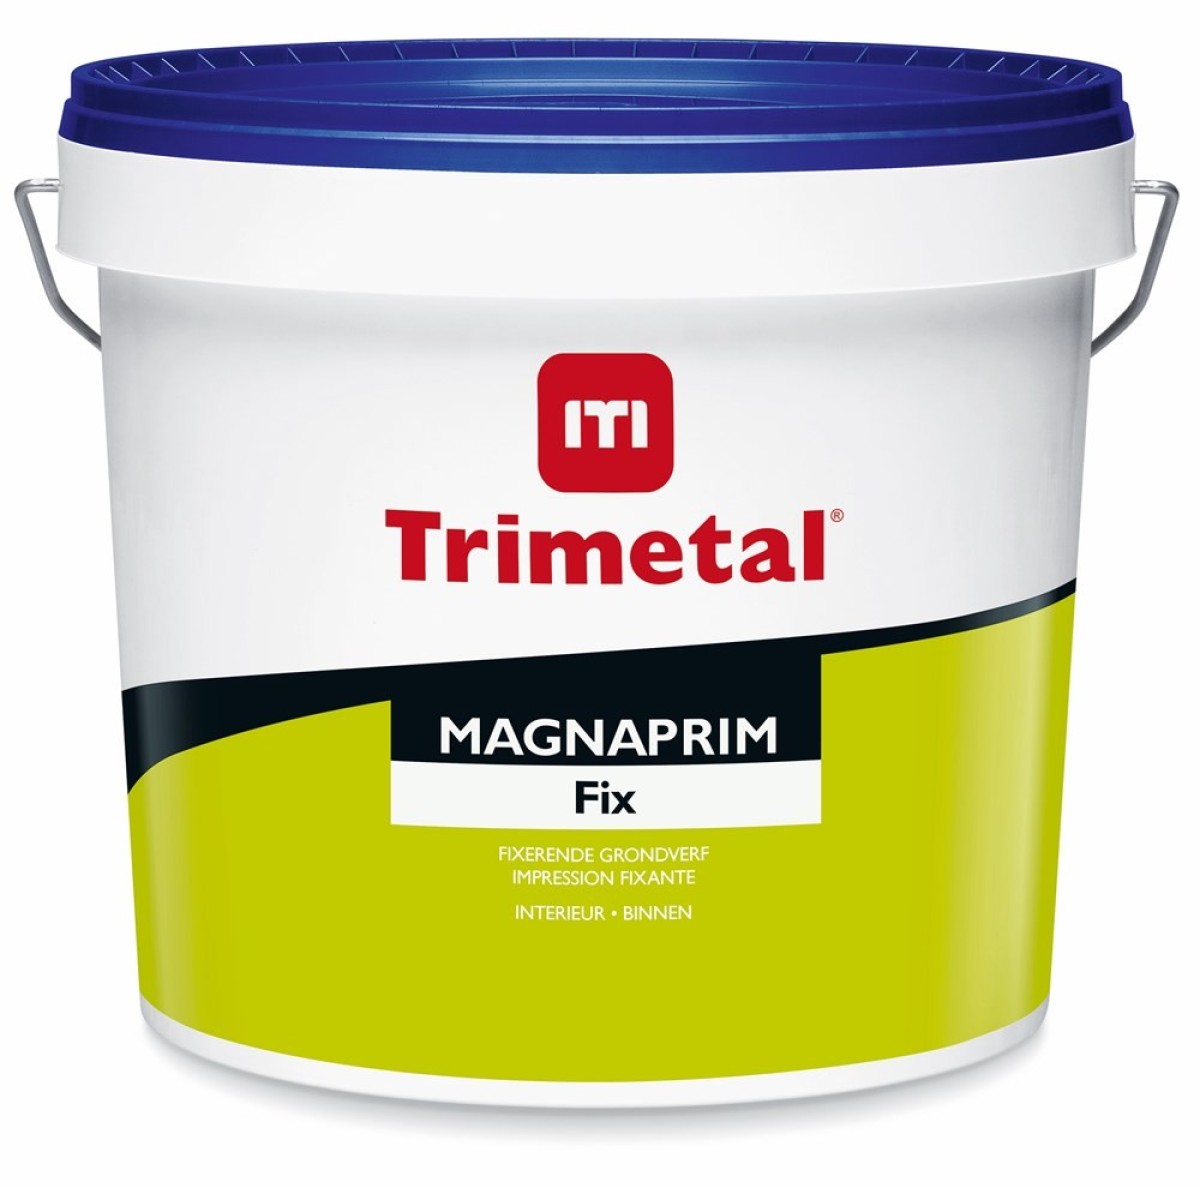 Trimetal Magnaprim fix